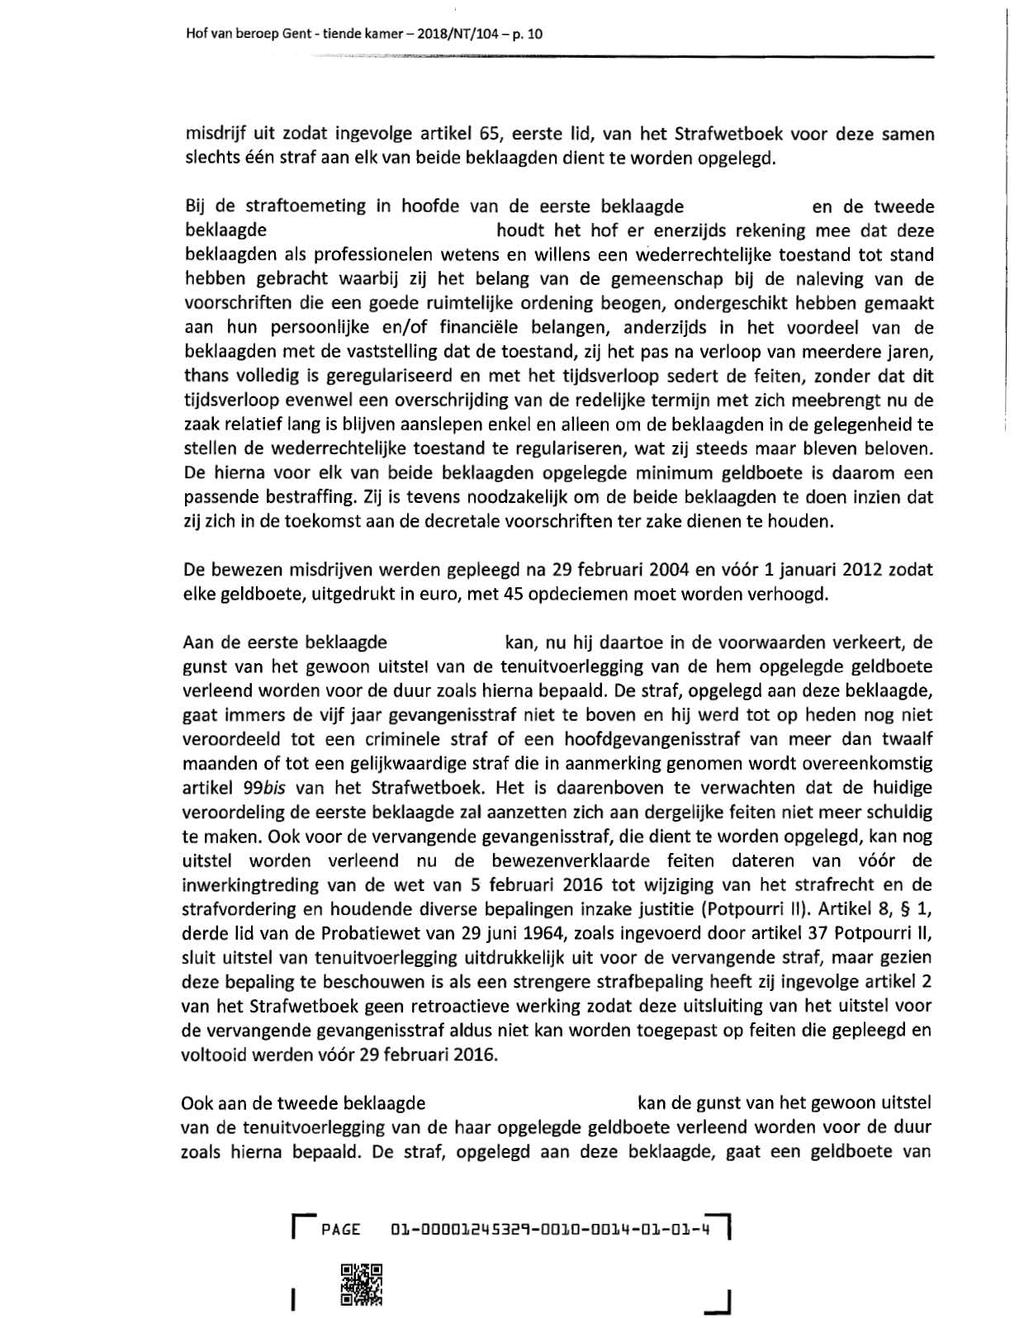 Hof van beroep Gent- tiende kamer - 2018/NT /104- p.